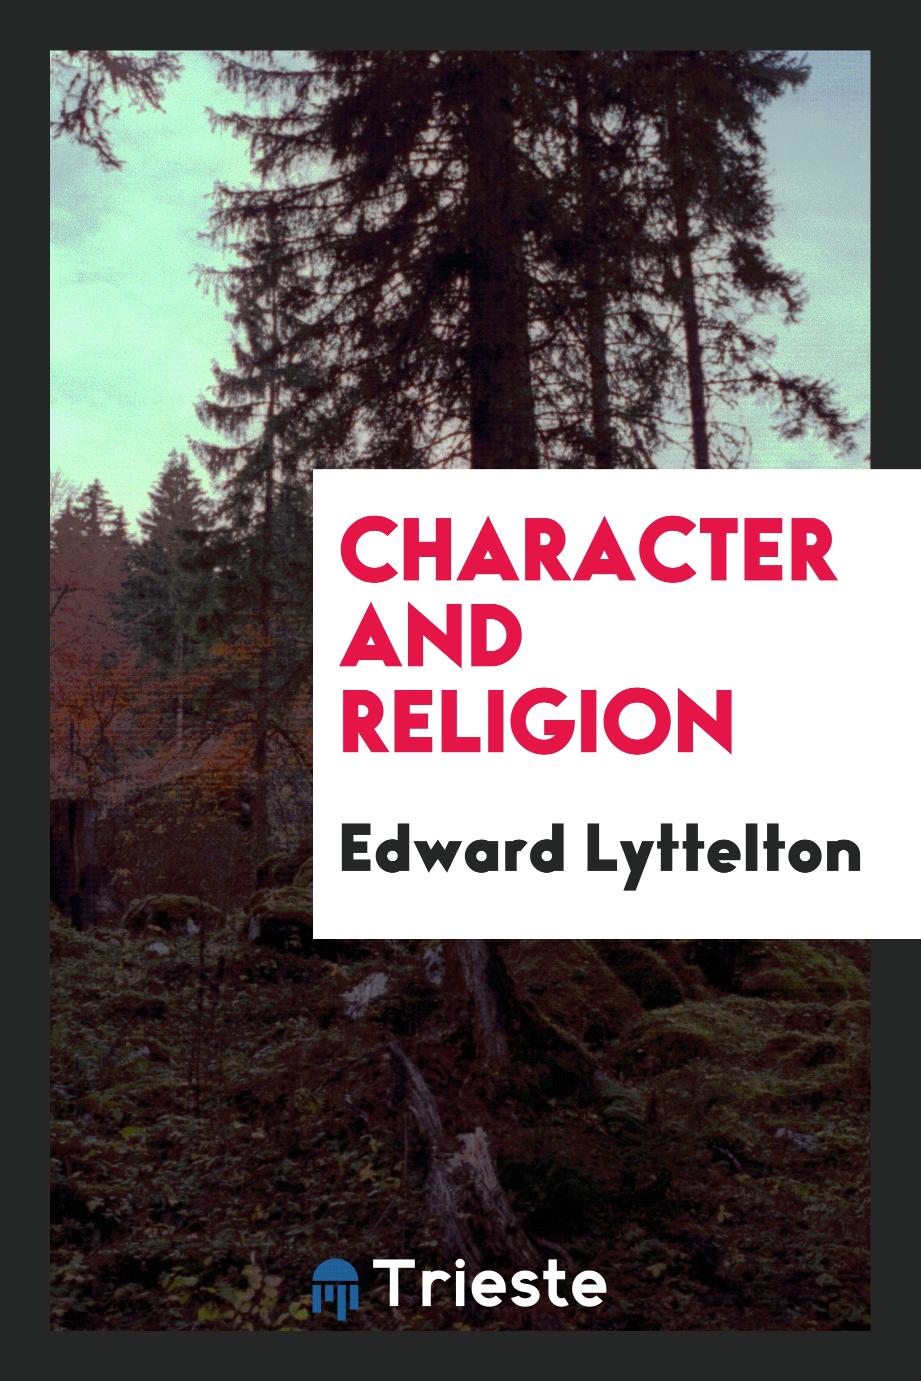 Edward Lyttelton - Character and religion